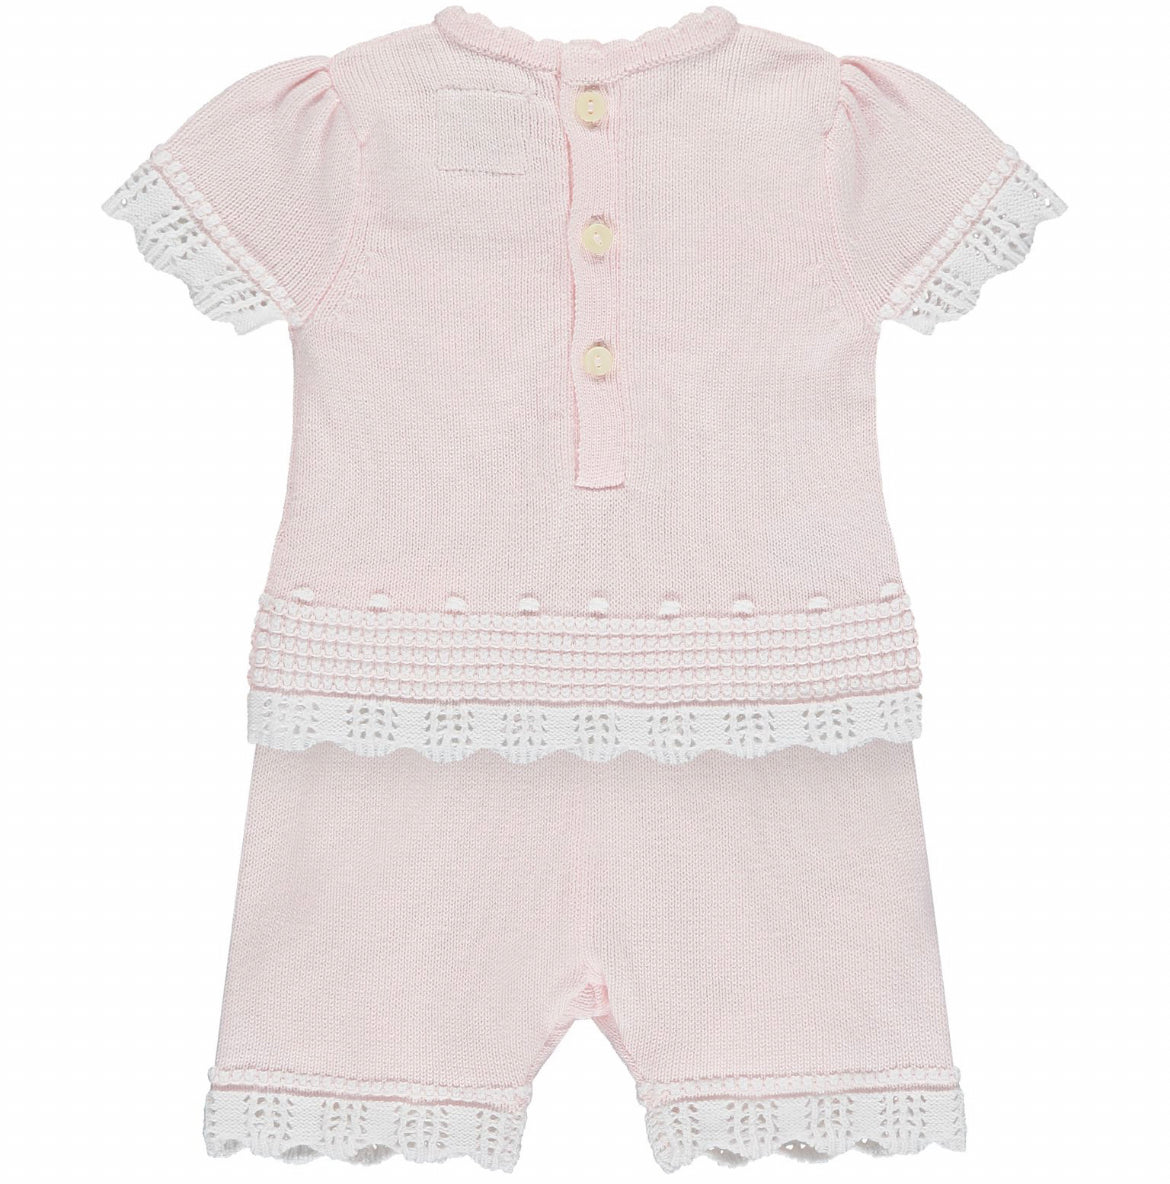 Emile et Rose Davina Baby Girl Pink & White Shorts Set